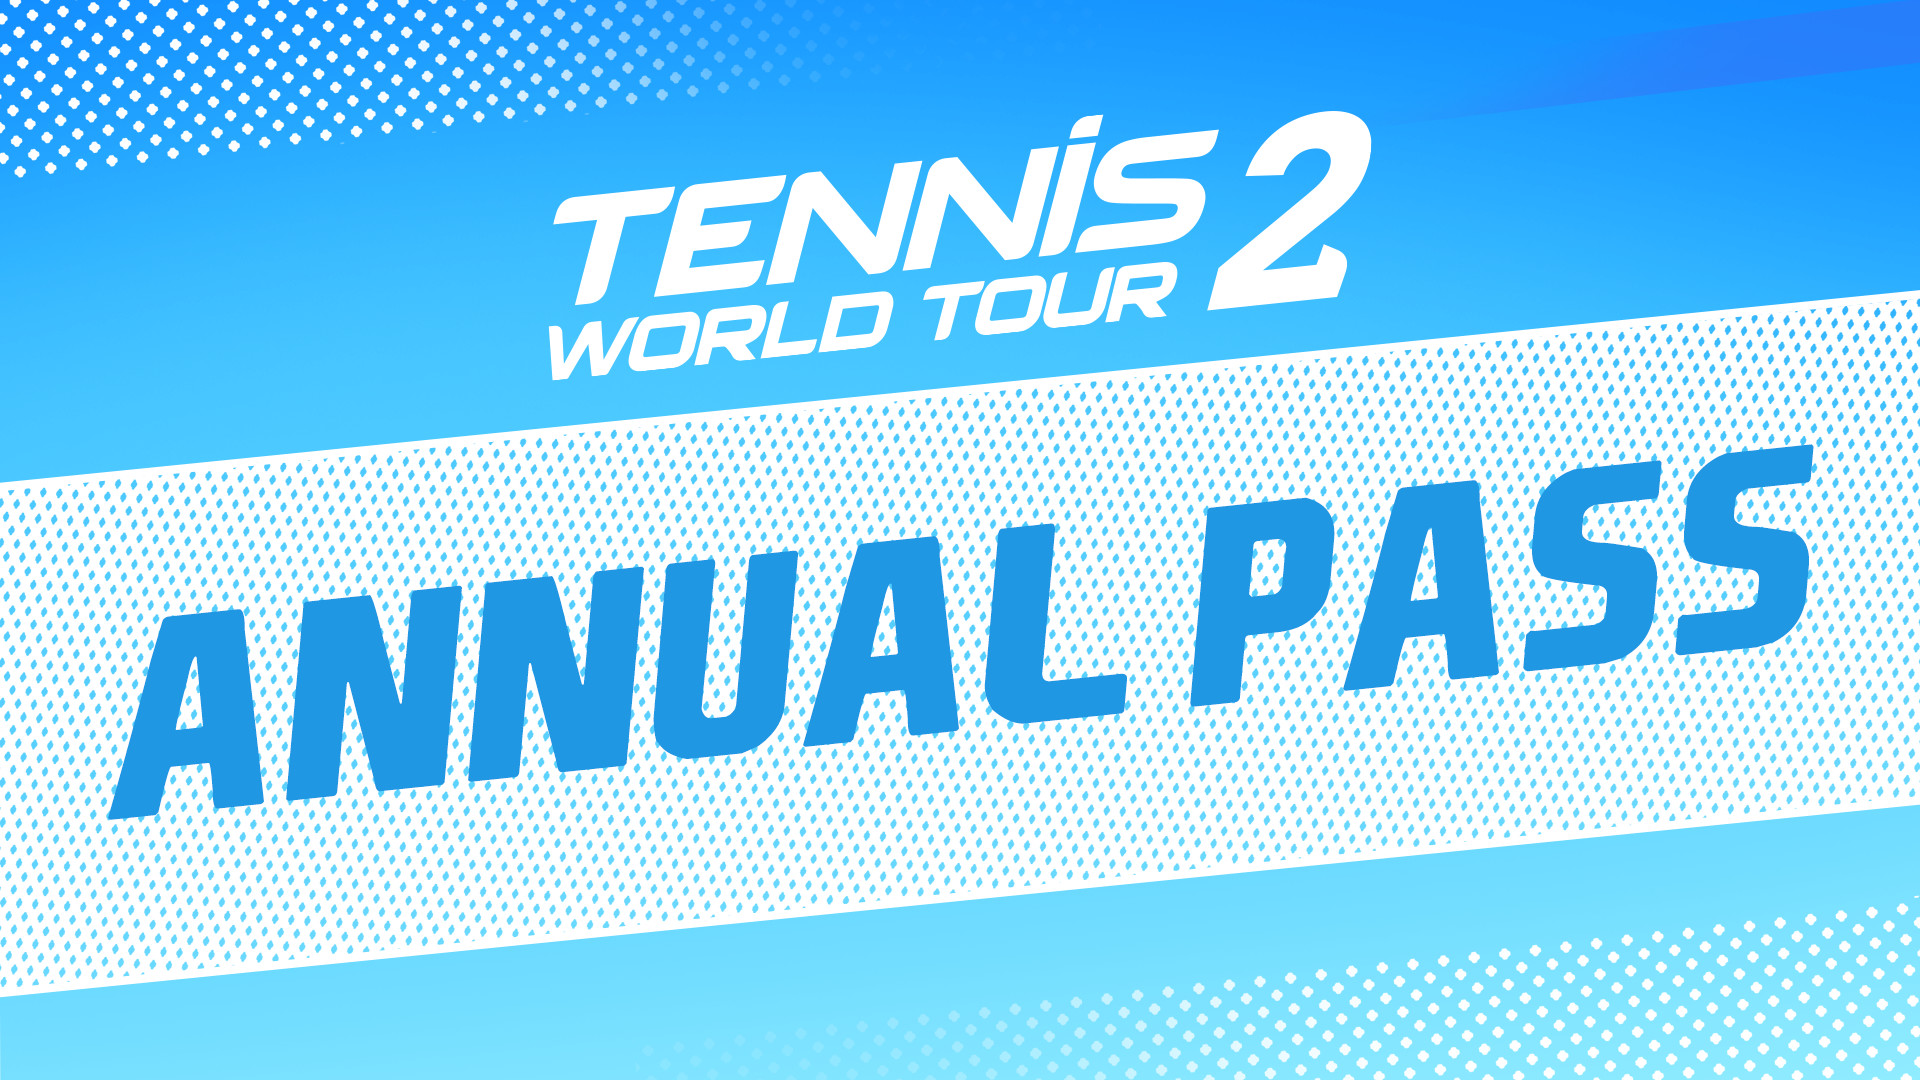 Tennis World Tour 2 - Annual Pass DLC Steam CD Key 7.23$